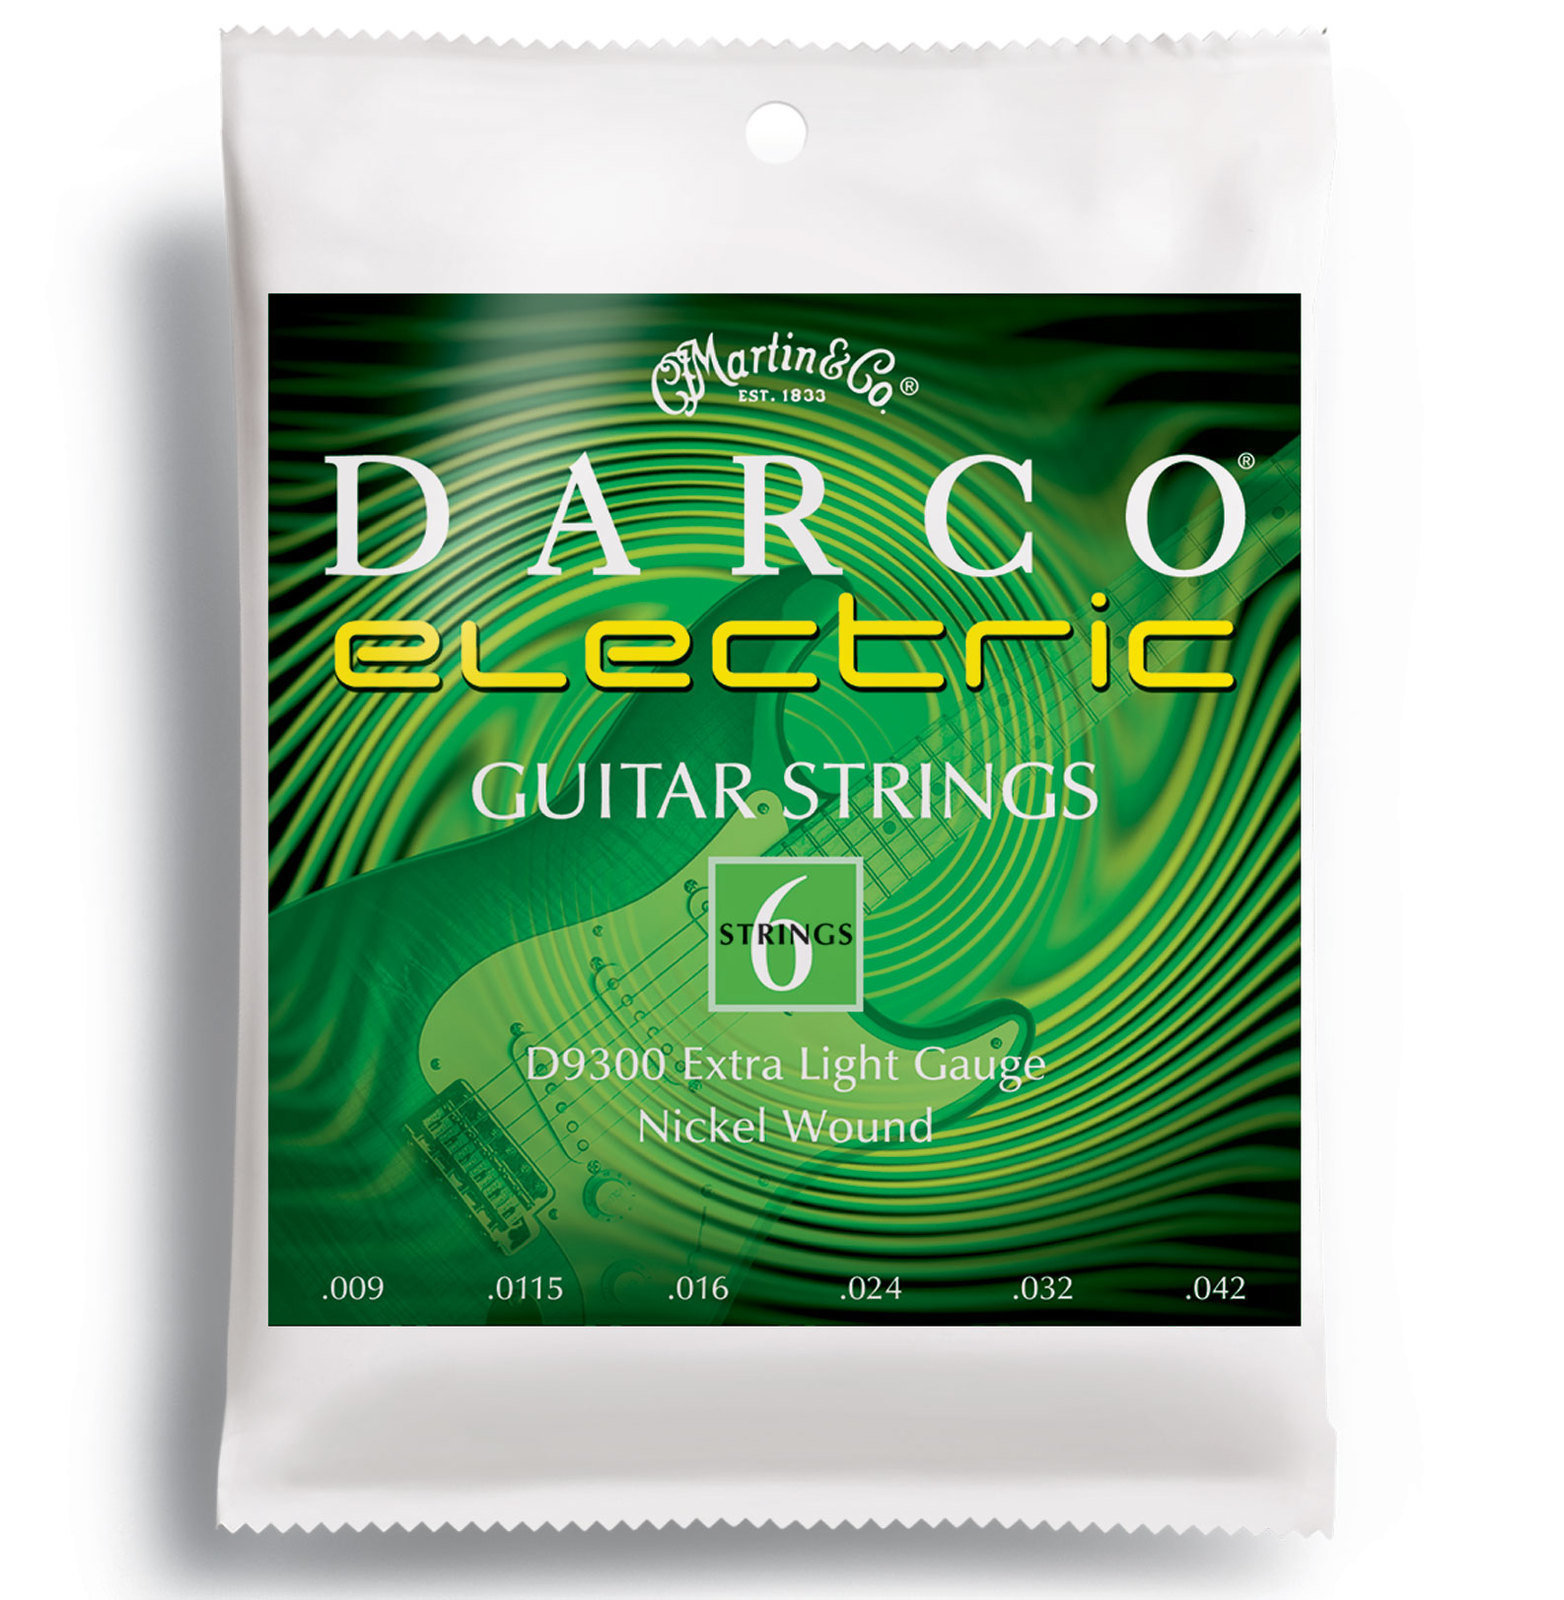 Snaren voor elektrische gitaar Martin D9300 Darco Electric Guitar Strings, Extra Light